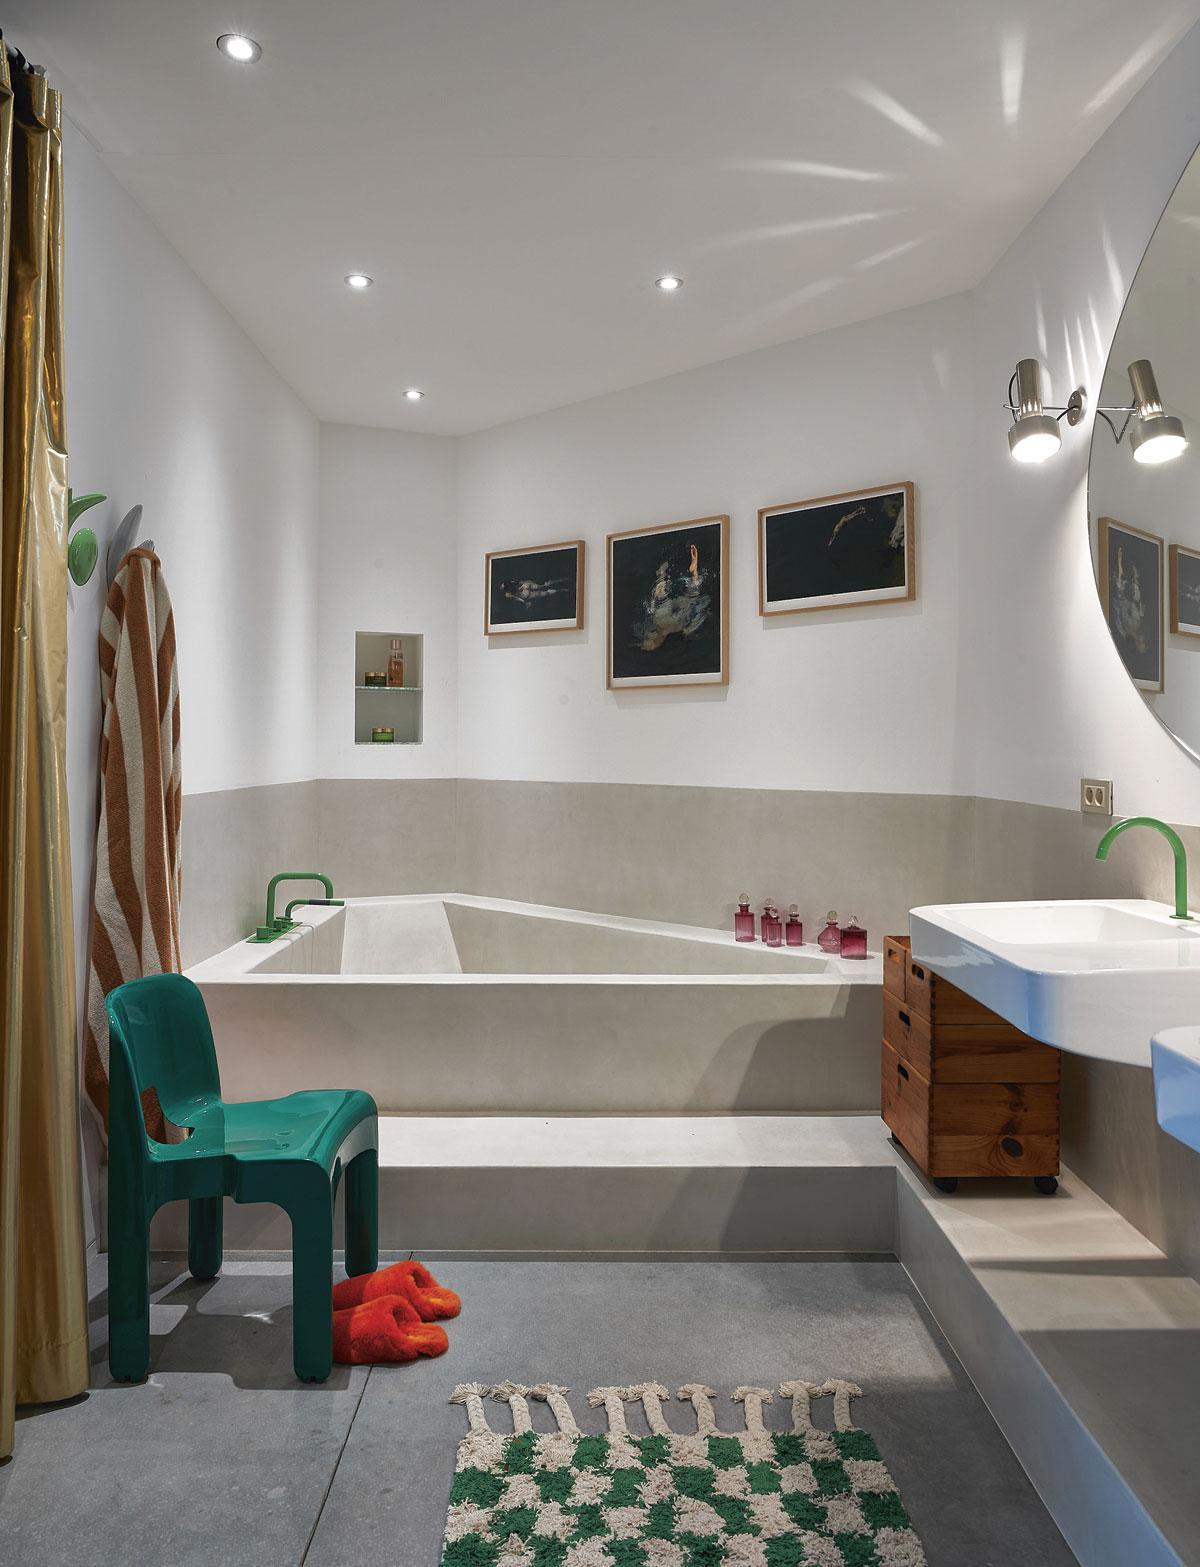 De badkamer die grenst aan de mastersuite heeft een bad dat ook fungeert als douche. Prevot liet het op maat uitwerken in Mortex.